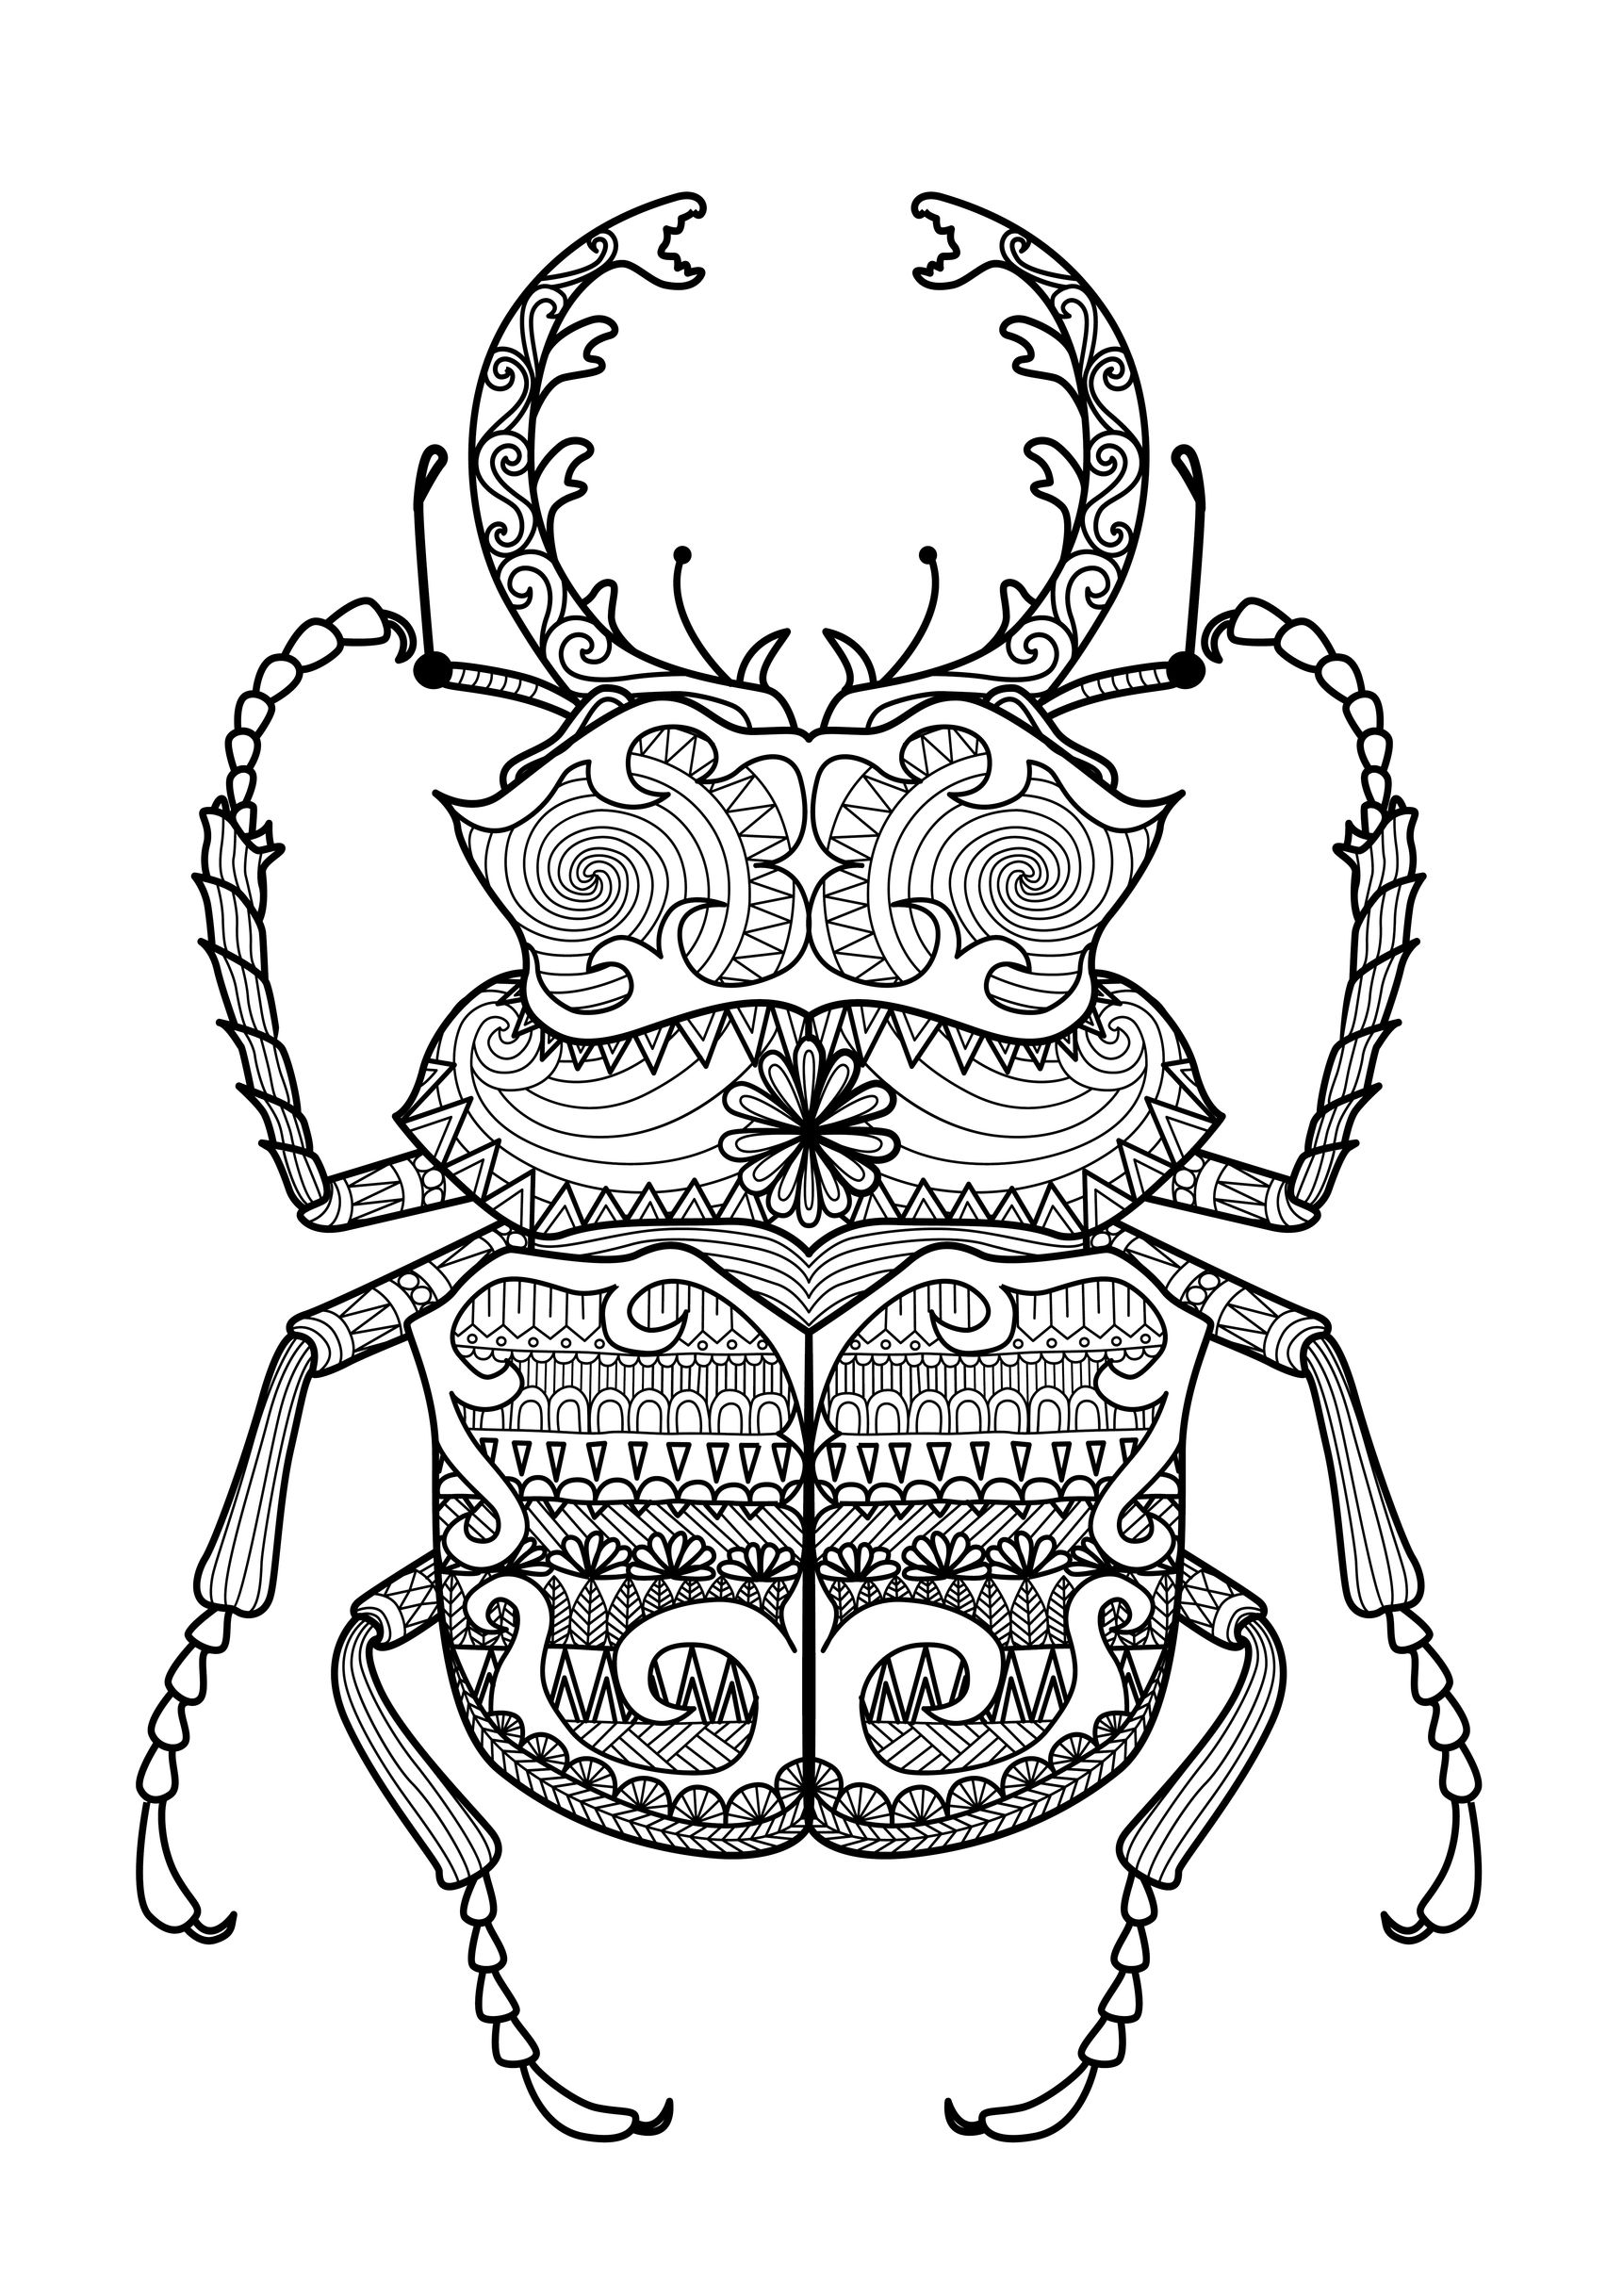 Zentangle beetle coloring page, by Bimdeedee (source: 123rf)